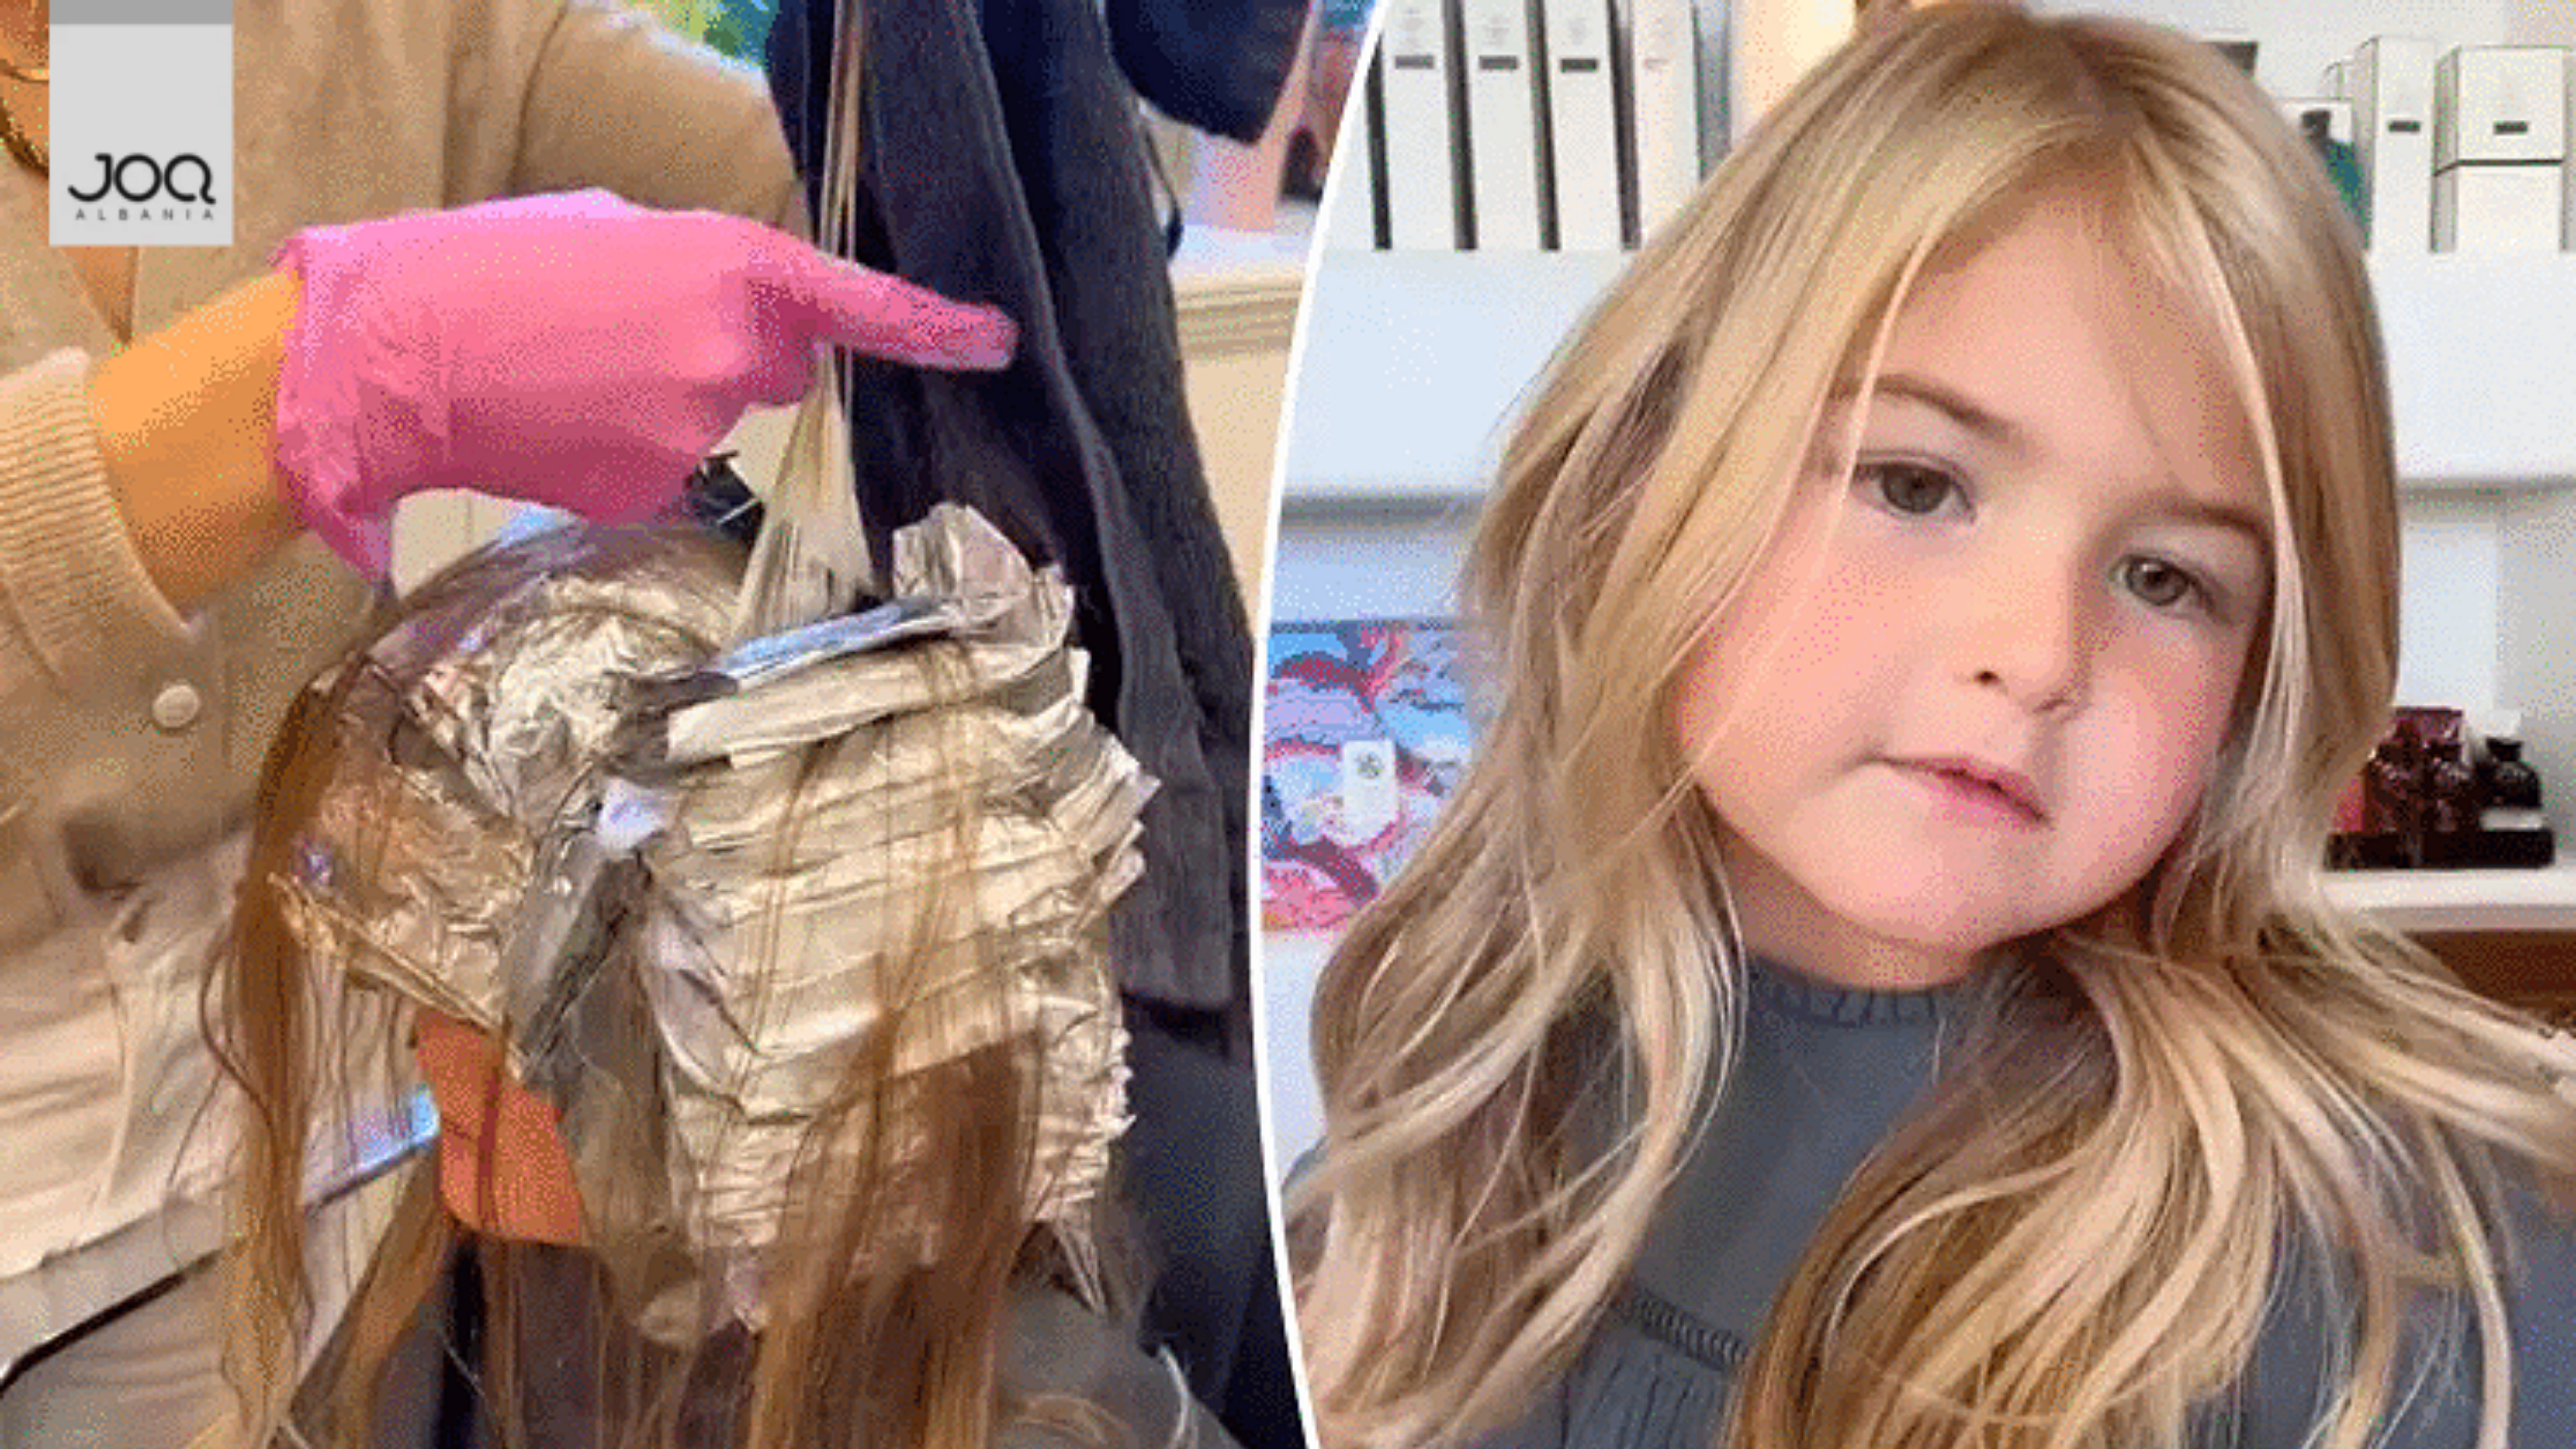 Nëna 22-vjeçare i lyen flokët të bijës 5 vjeç: E çova në parukeri të bëhej bjonde